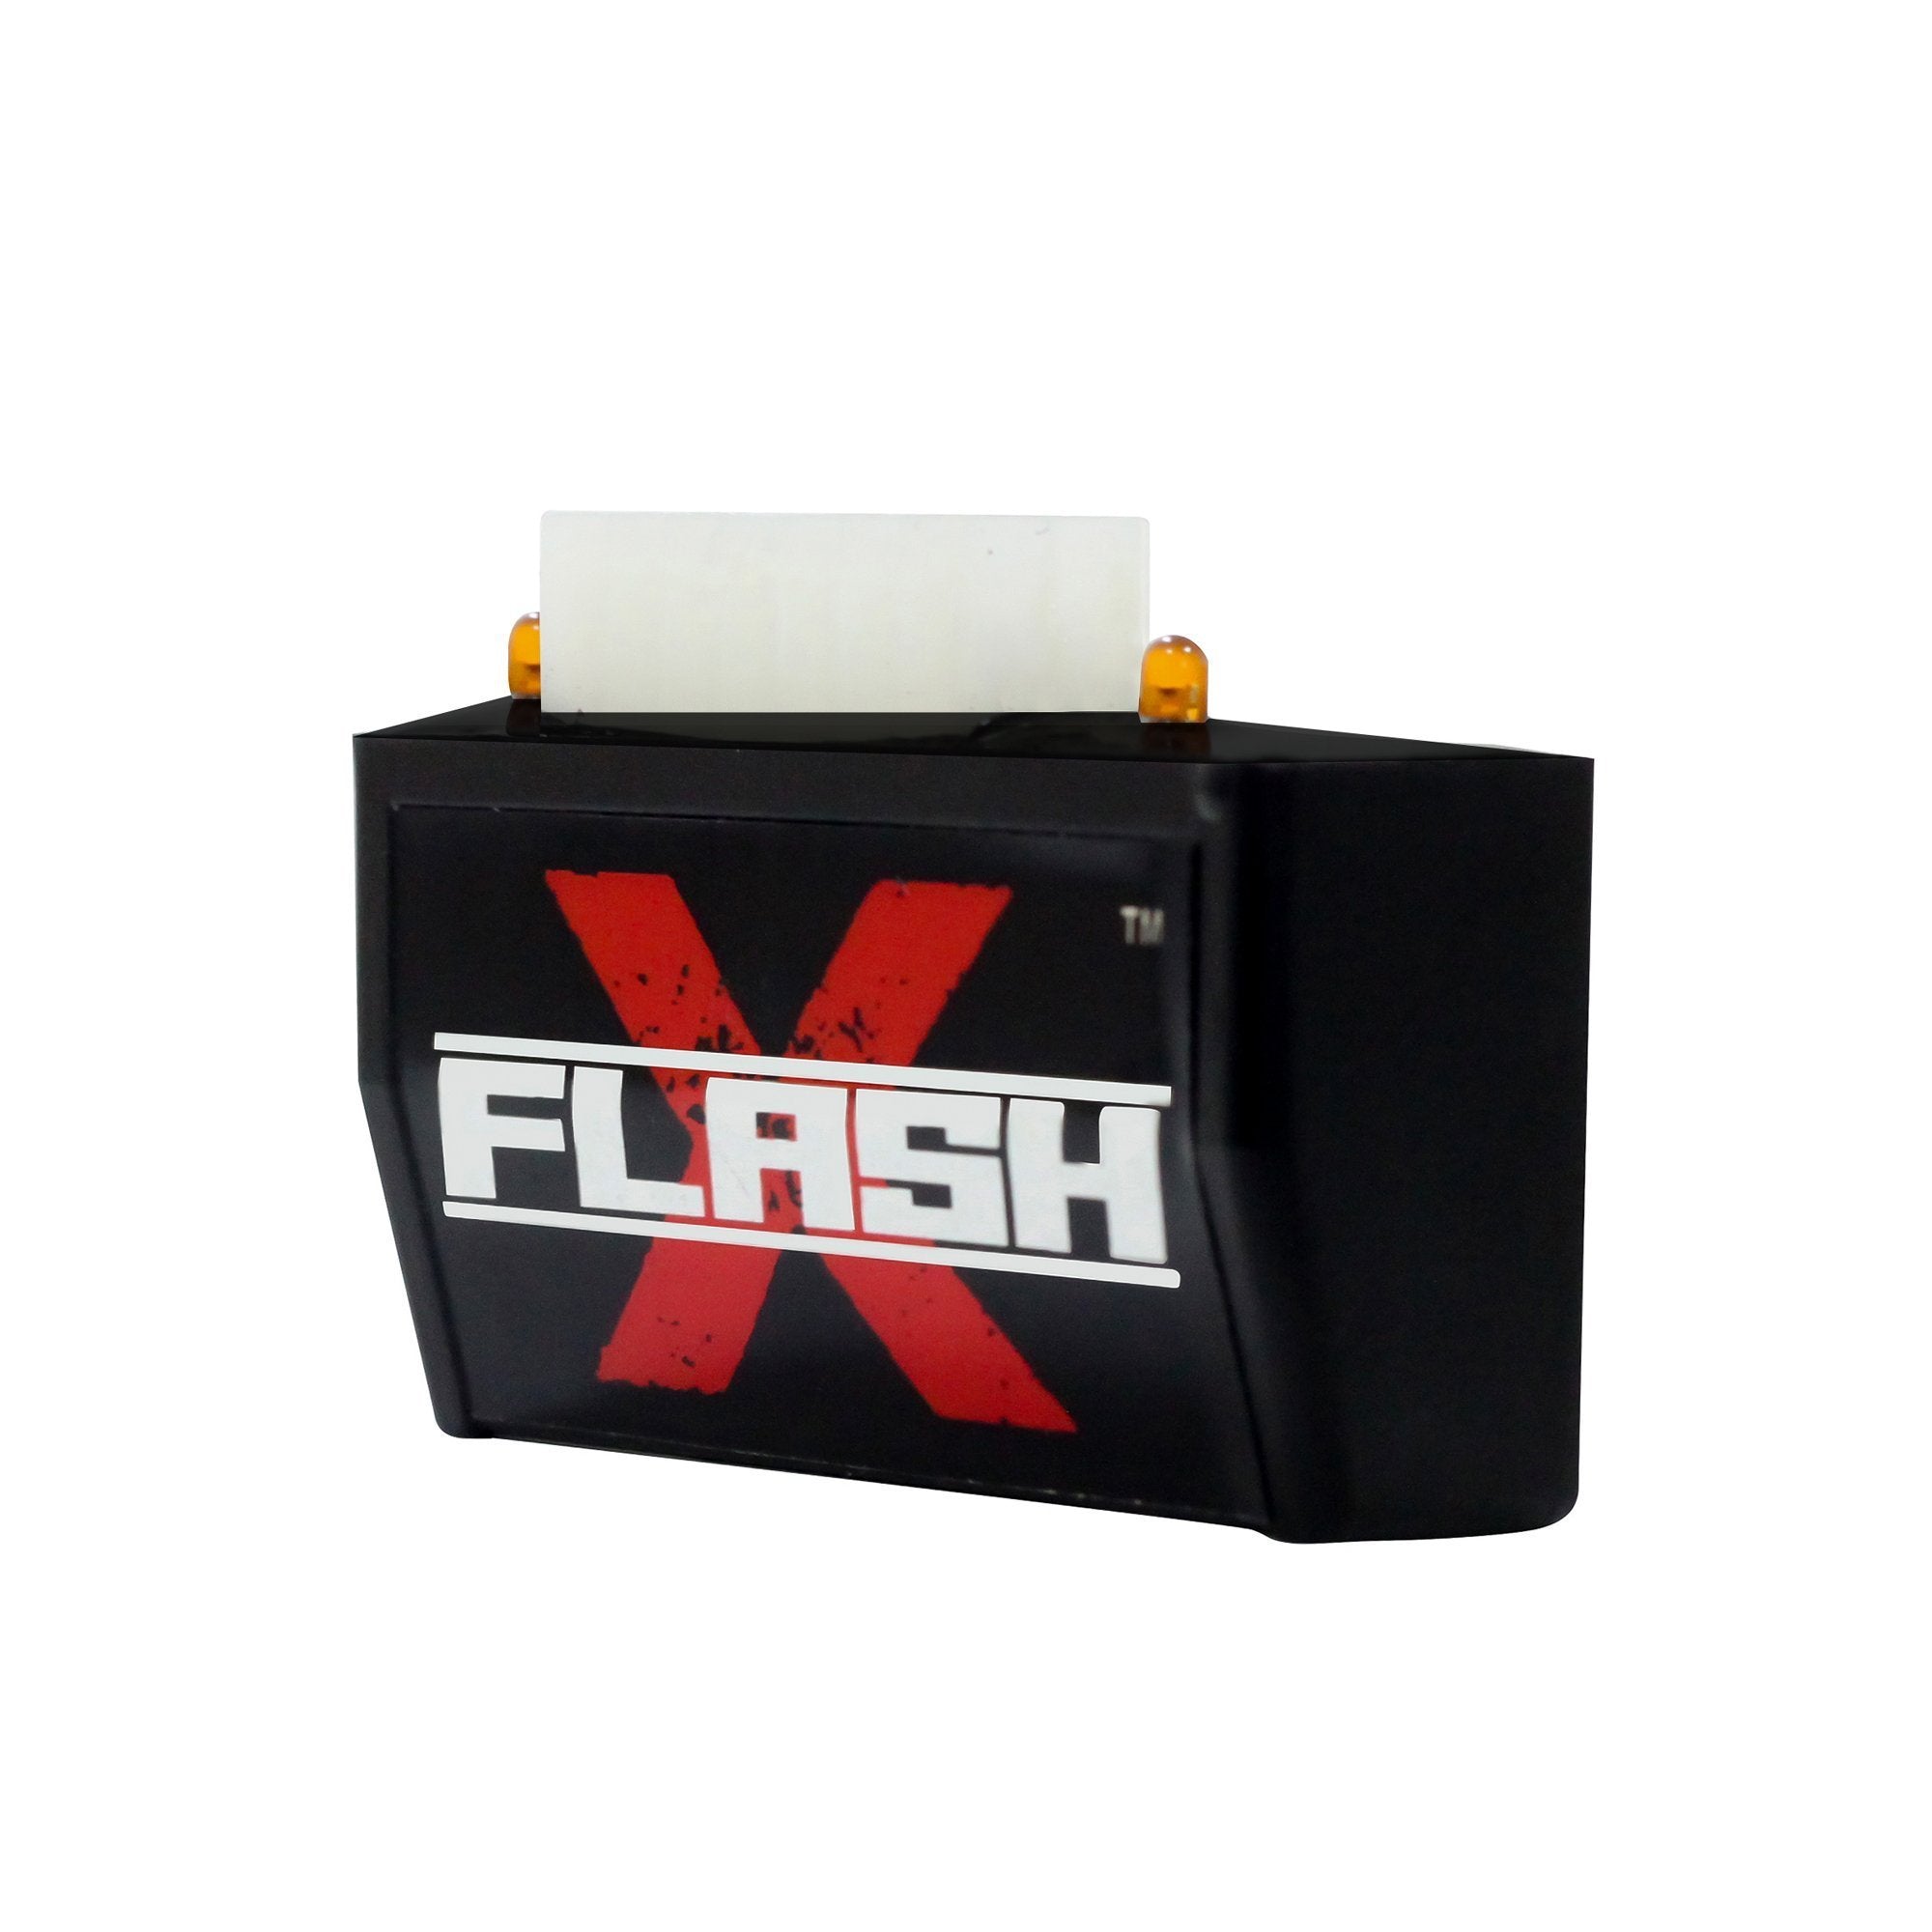 Flash X Hazard Module For Yamaha FZ X / 150